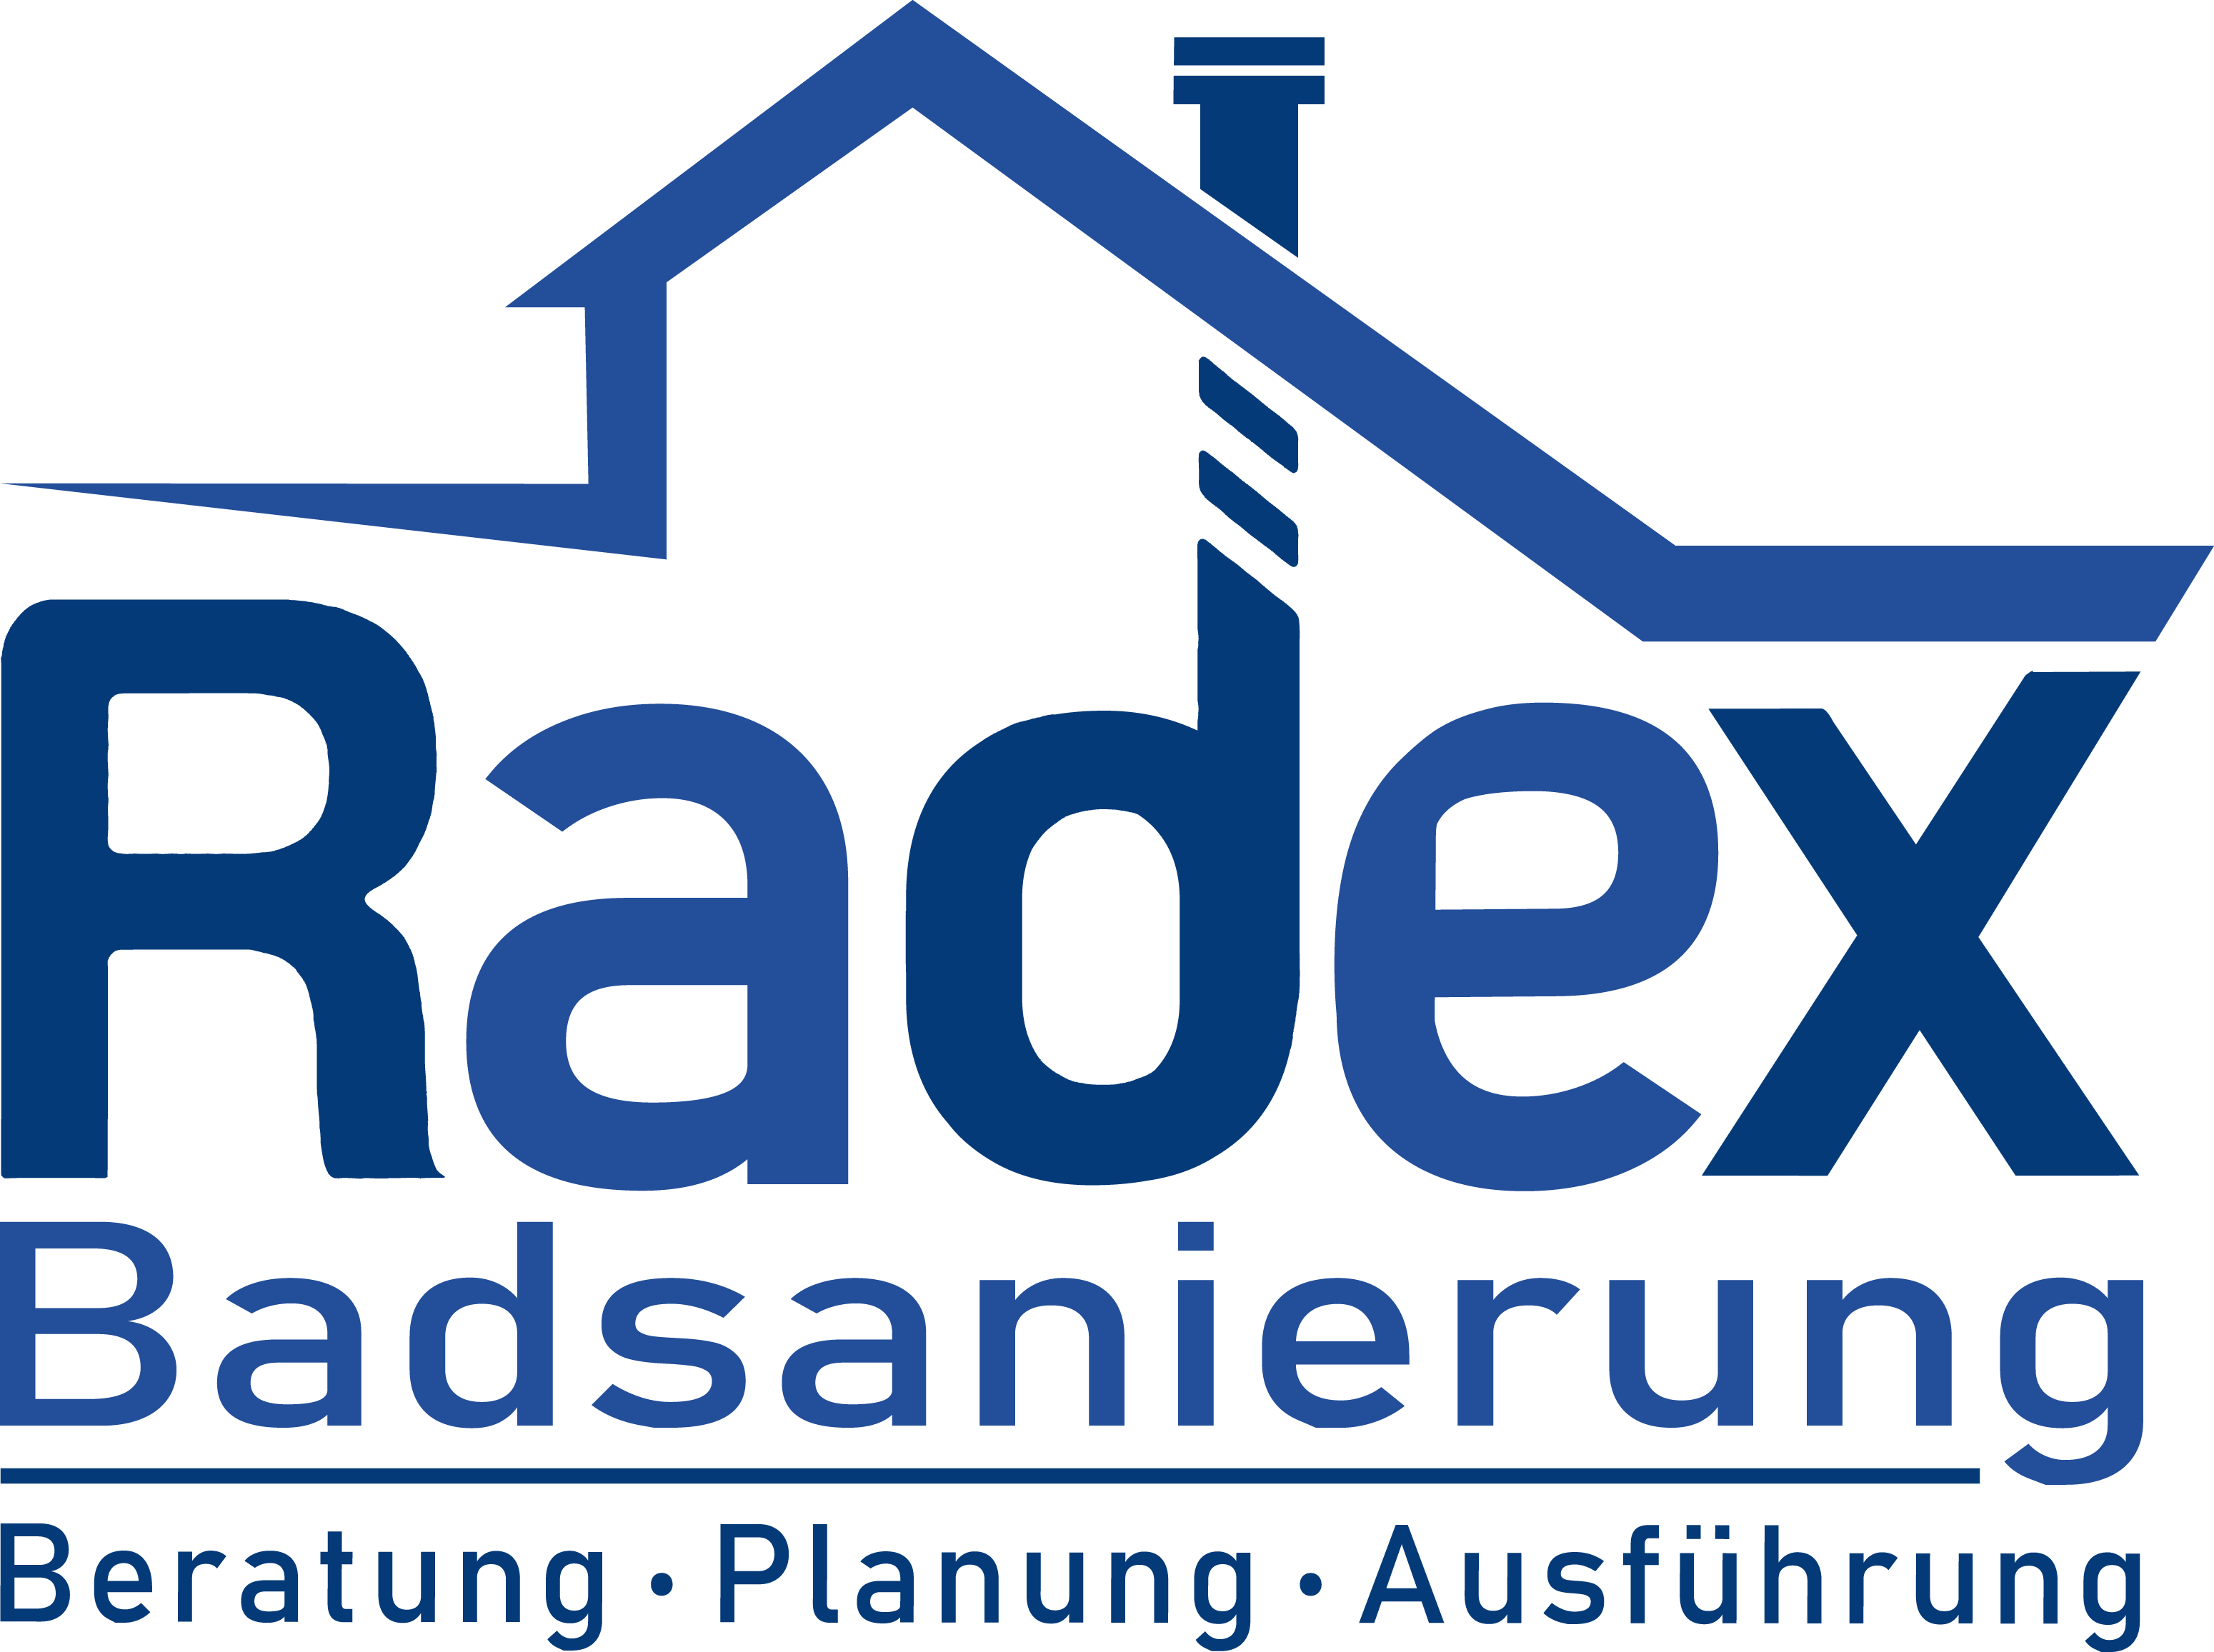 Radex, Badsanierung, Badrenovierung, Installation, Fliesenarbeiten